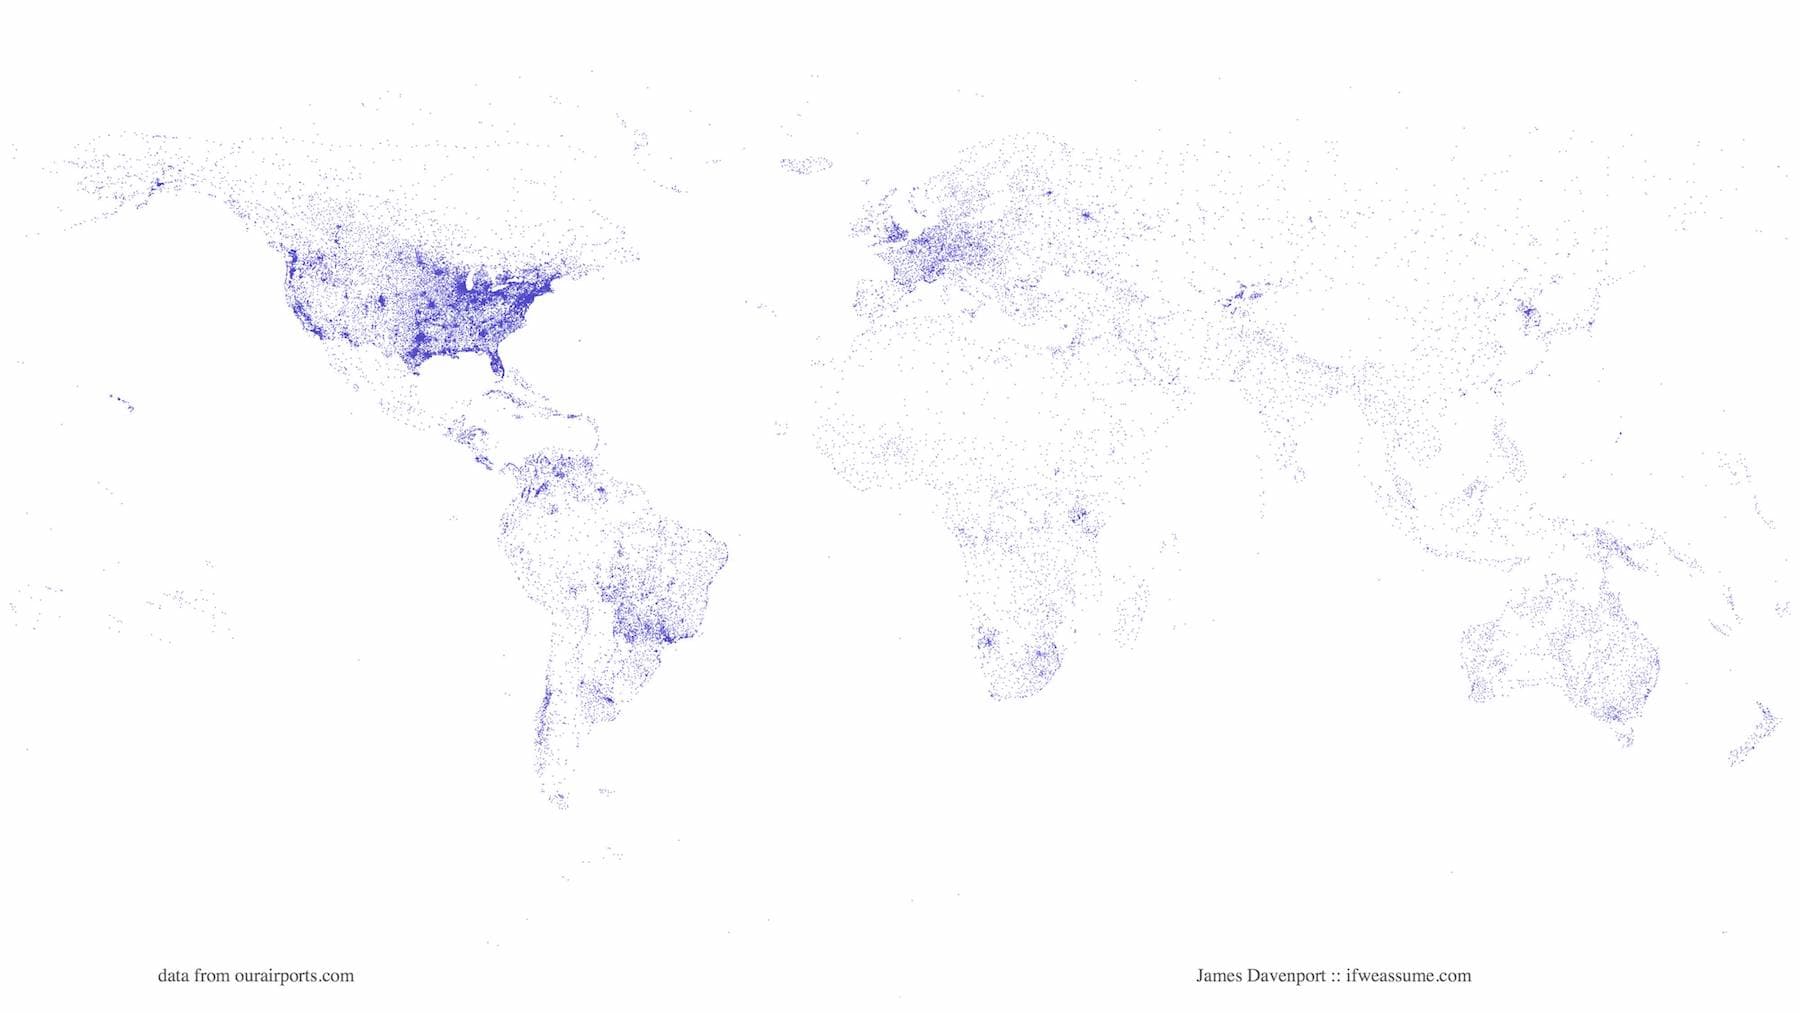 Mapa del mundo creado a partir de marcar todos los aeropuertos del mundo